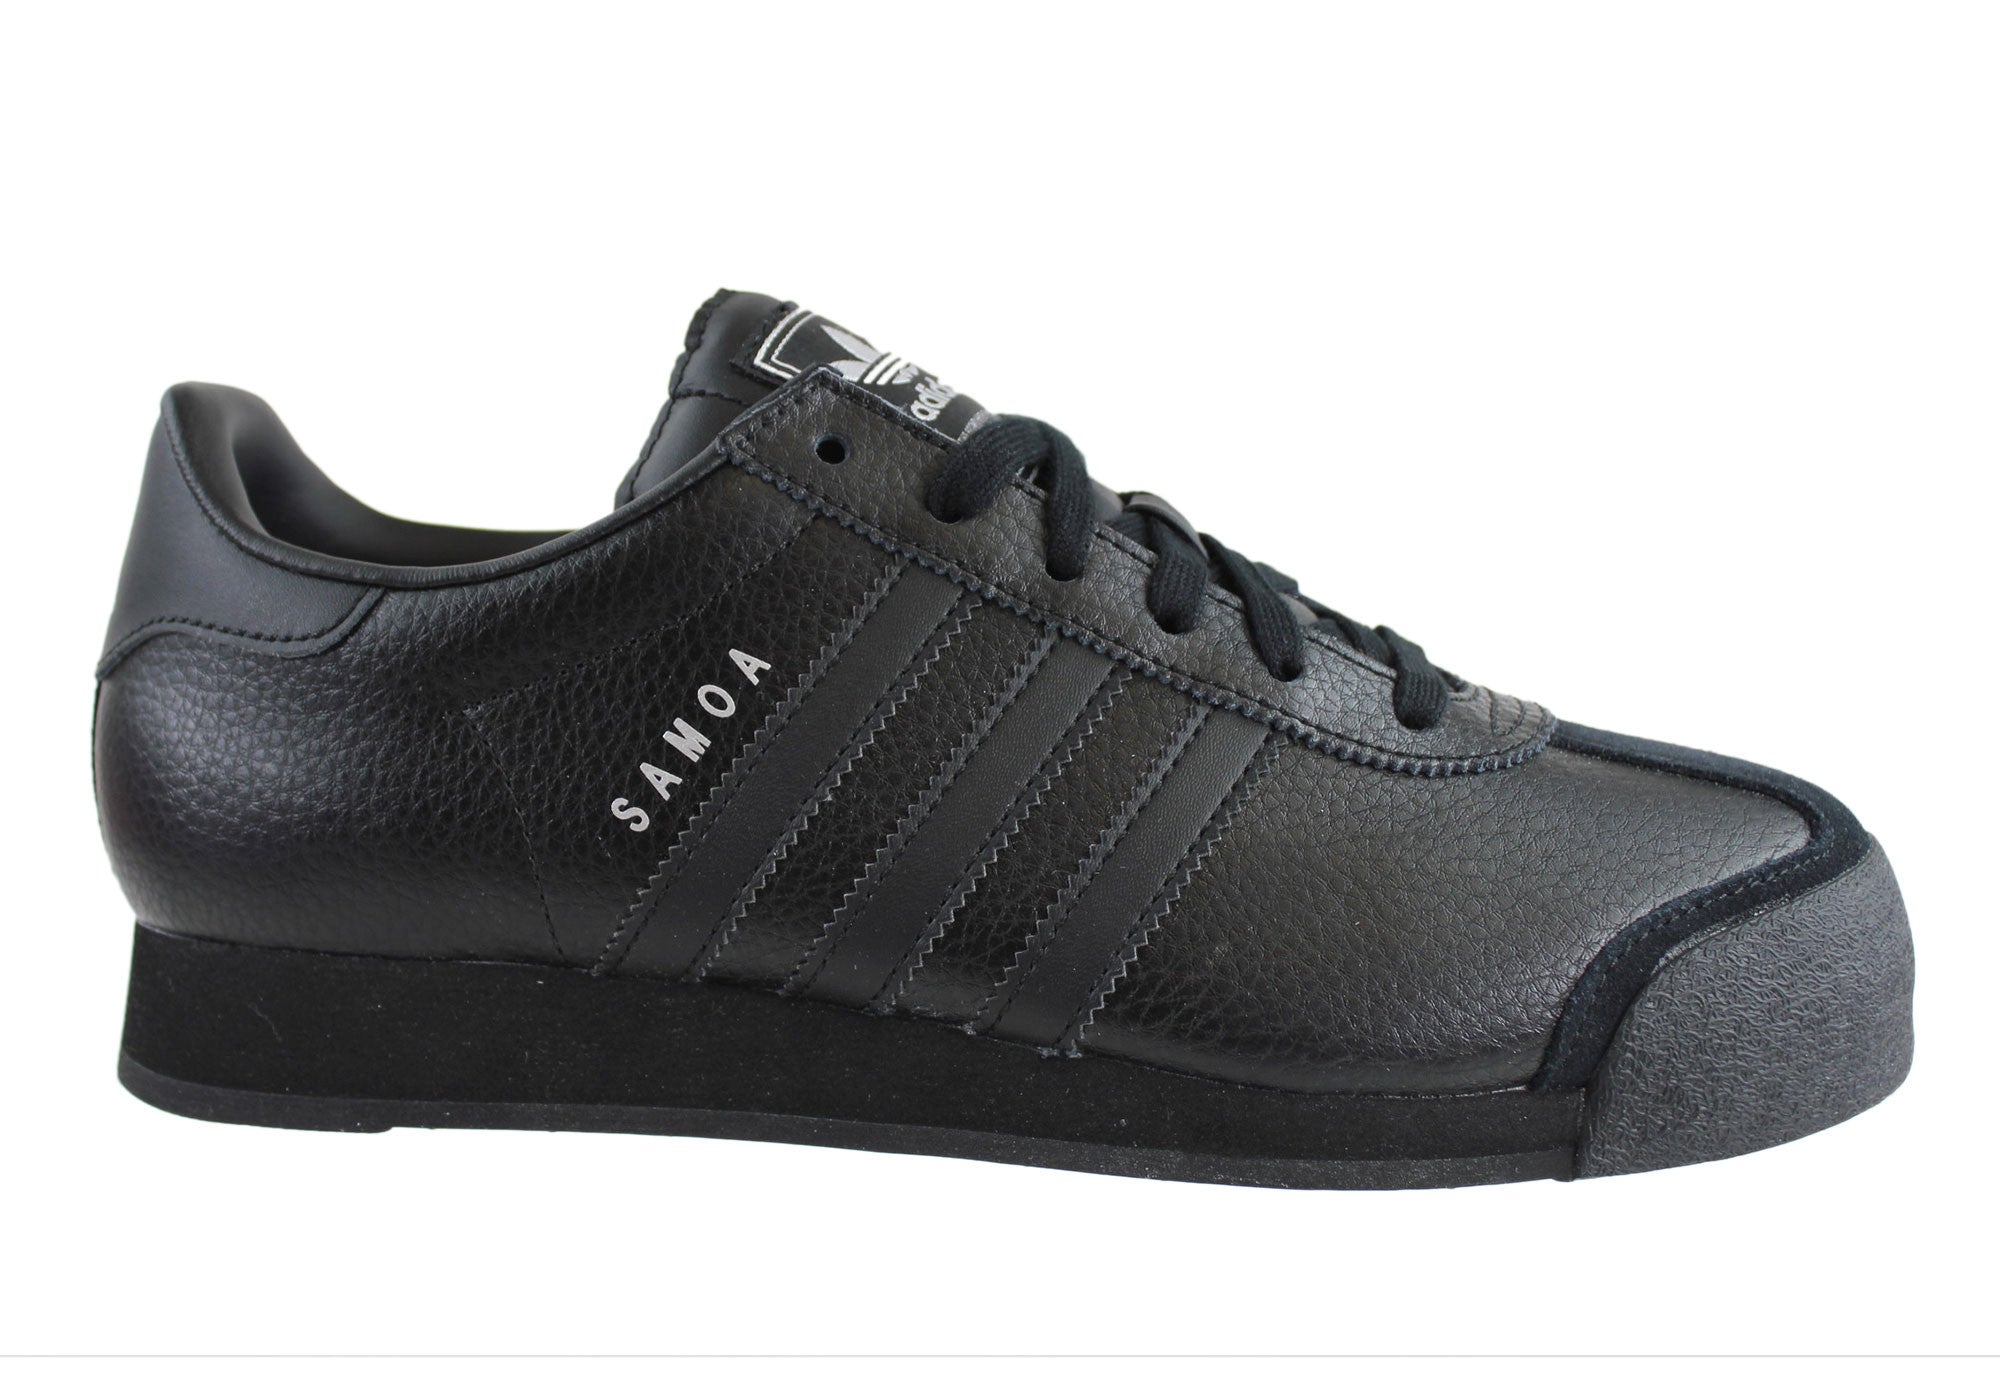 adidas samoa shoes black